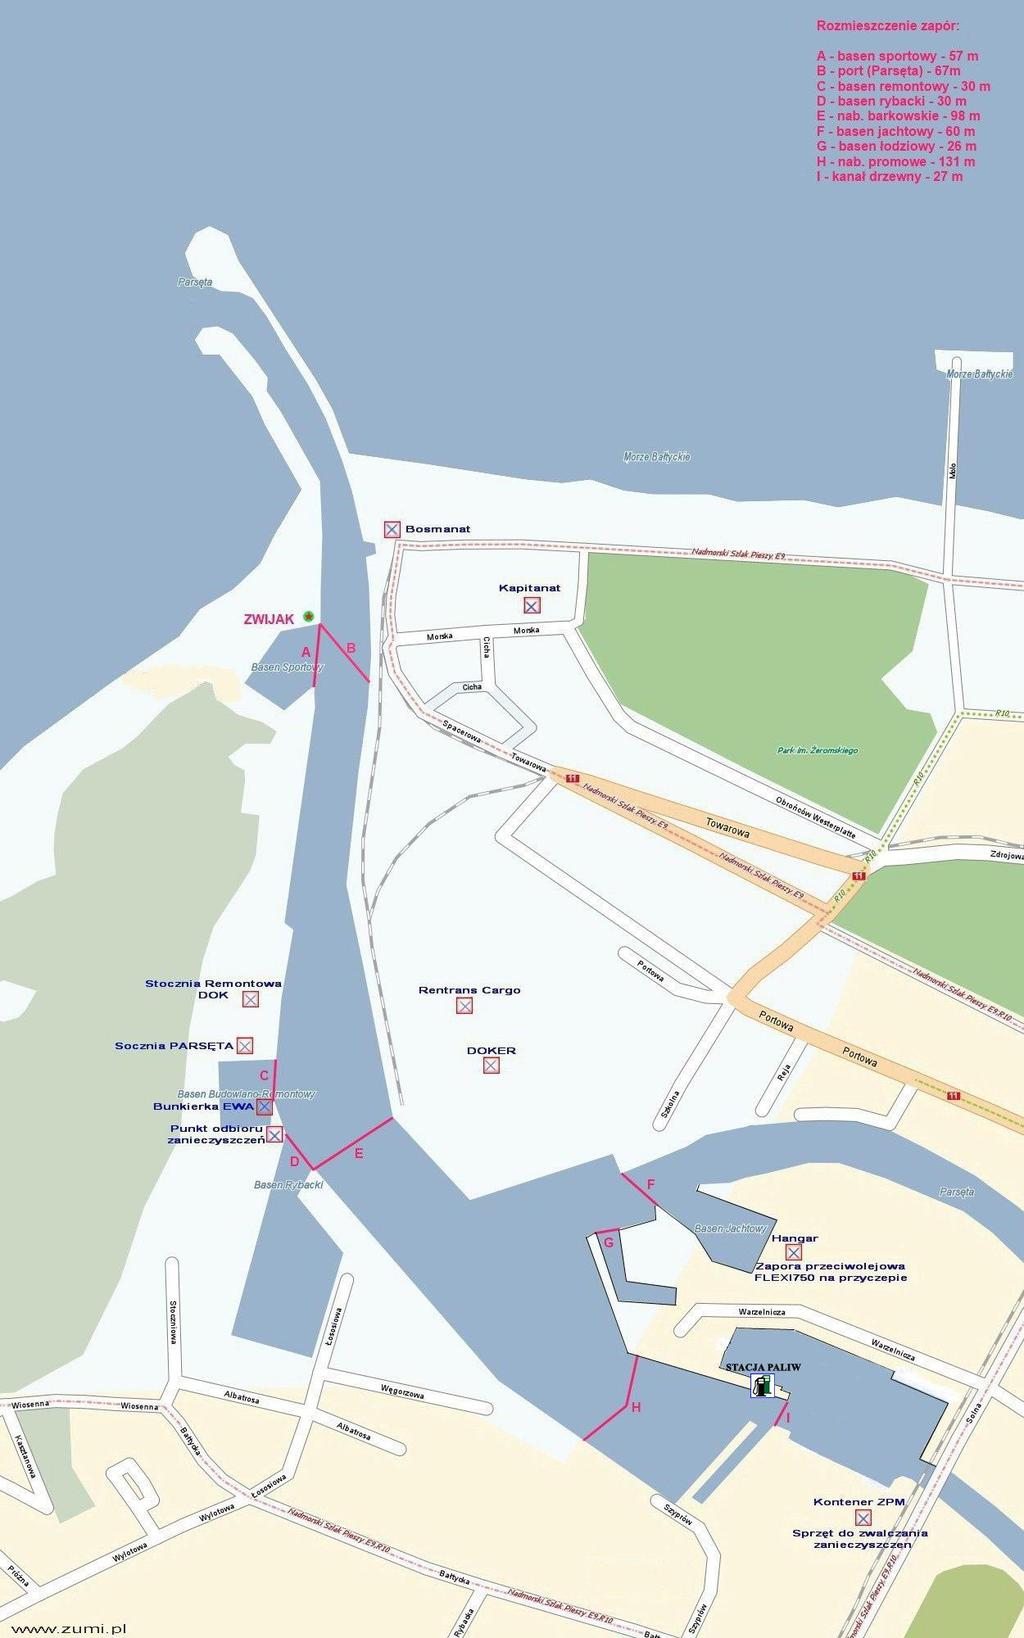 ZAŁĄCZNIK III Mapa portu oraz plan